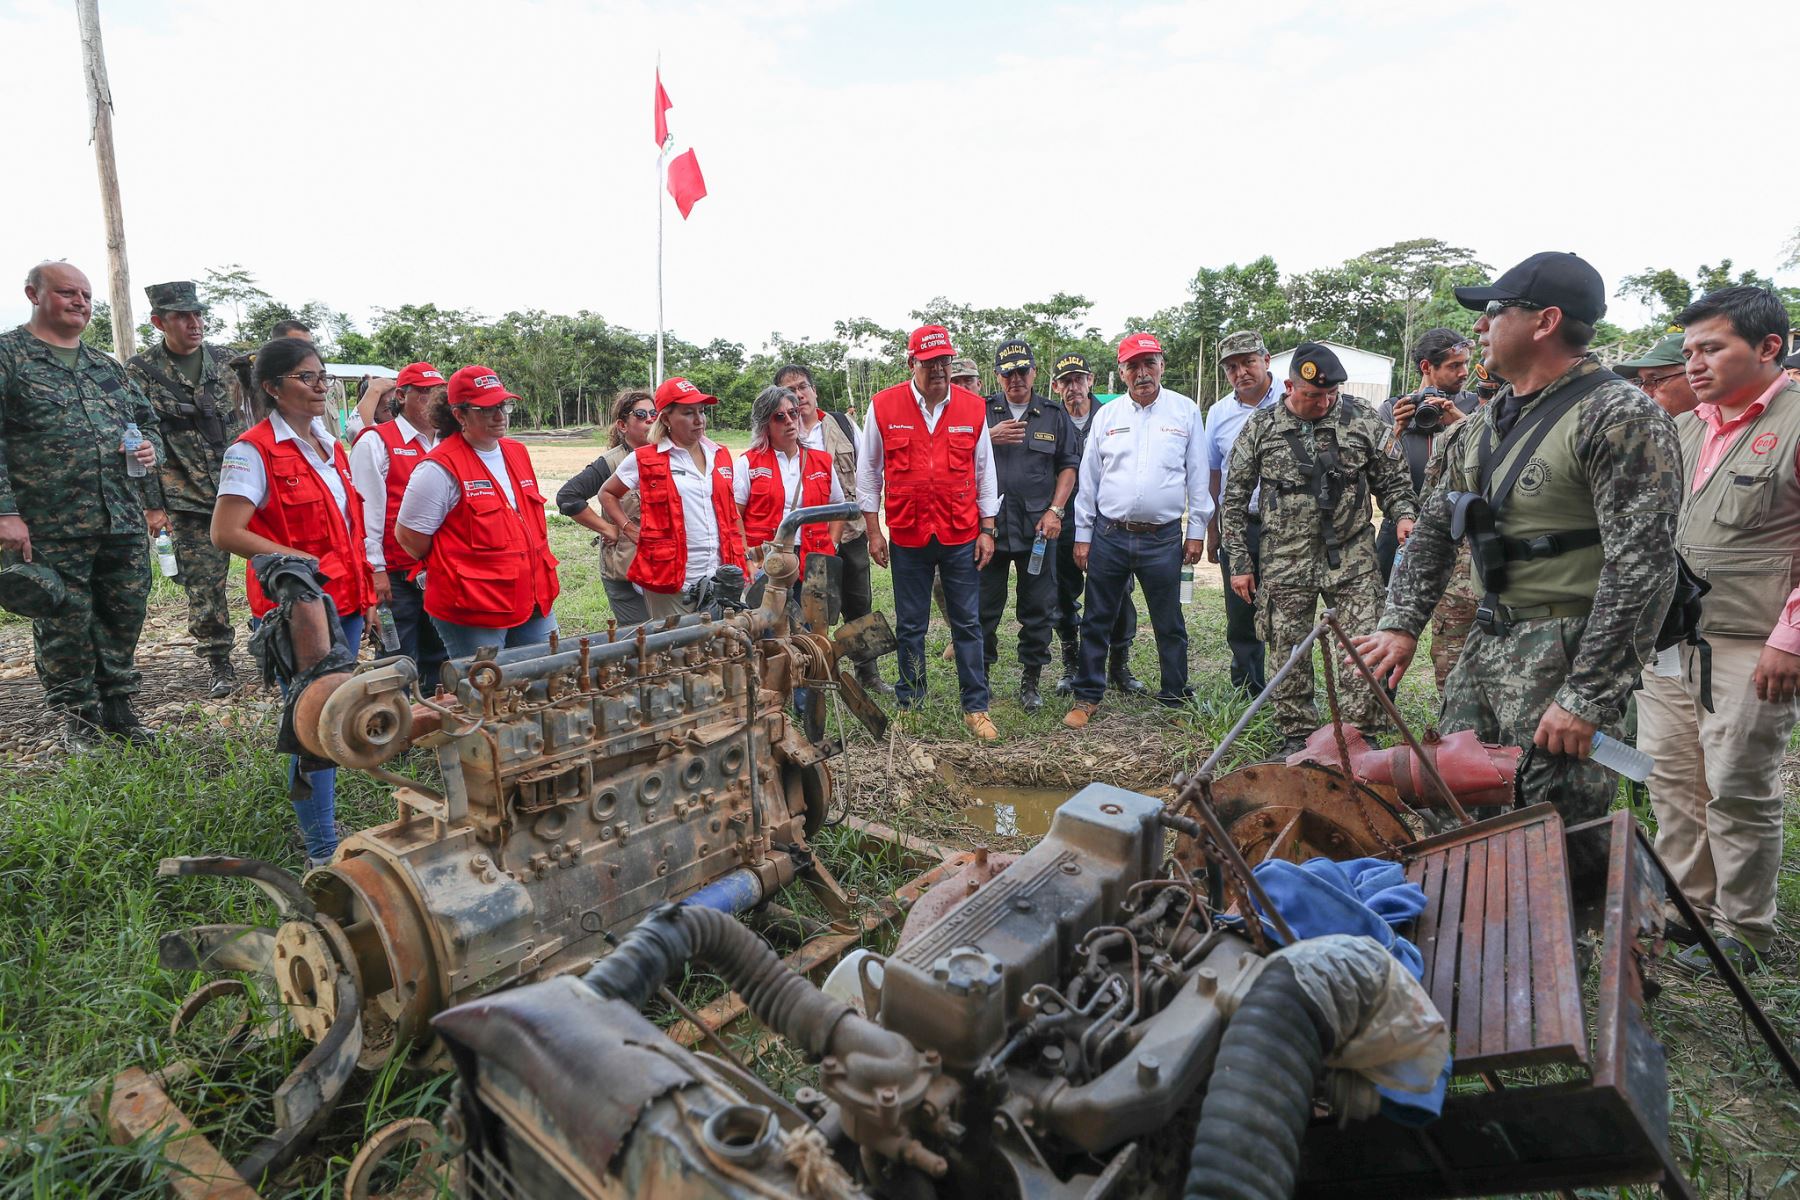 Fuerzas del orden refuerzan control en Reserva Nacional Tambopata en lucha contra la minería ilegal, destaca comitiva ministerial que visitó Madre de Dios.